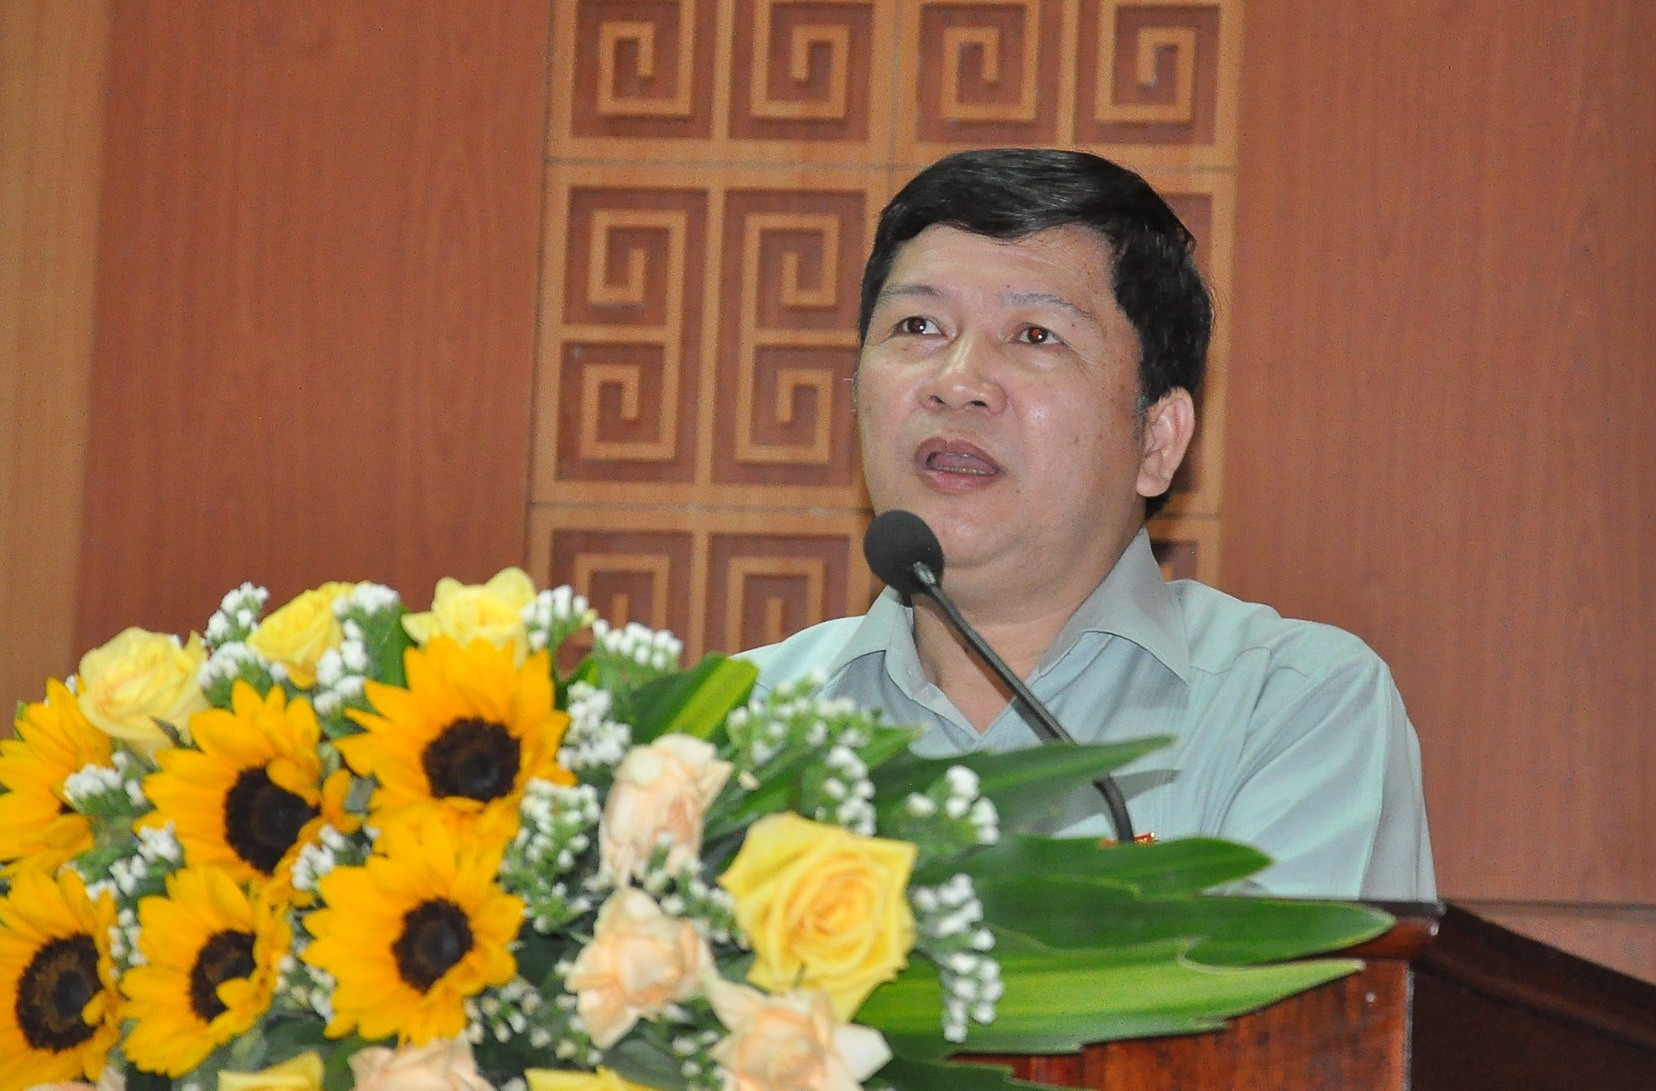 Ông Tạ Văn Hạ, ứng cử viên ĐBQH khóa XV do trung ương giới thiệu ứng cử tại Quảng Nam. Ảnh: A.Đ